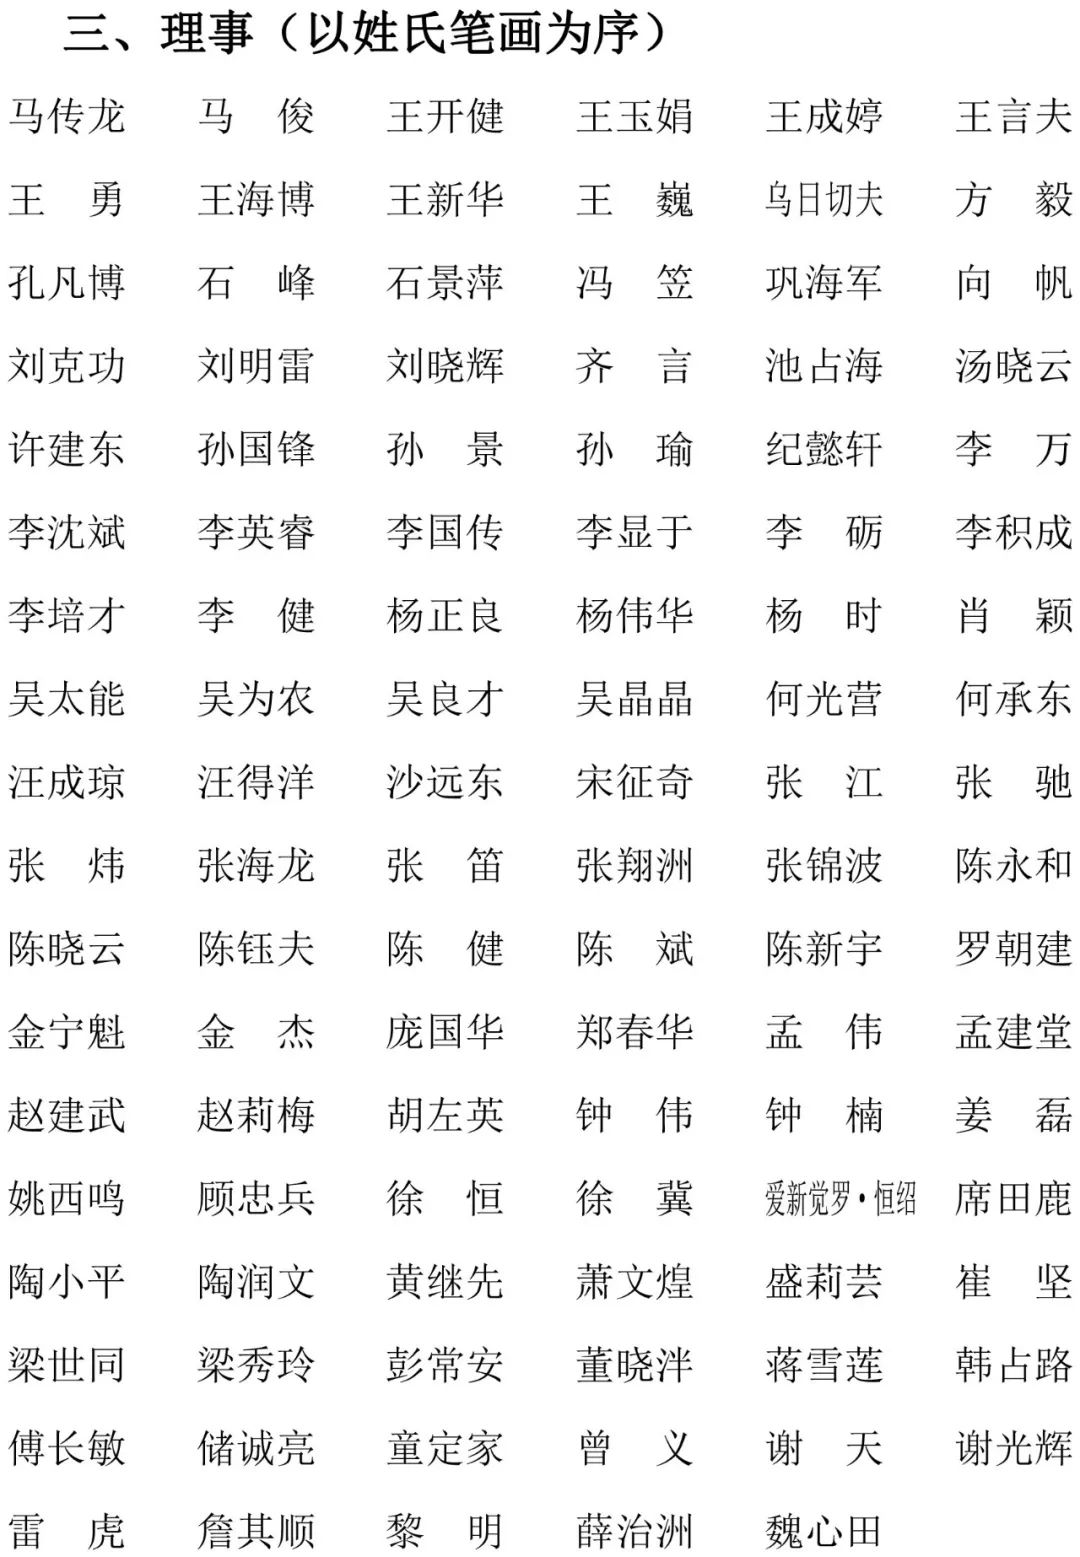 农工党中央书画院新一届领导班子公布，杜小荃当选副院长兼秘书长